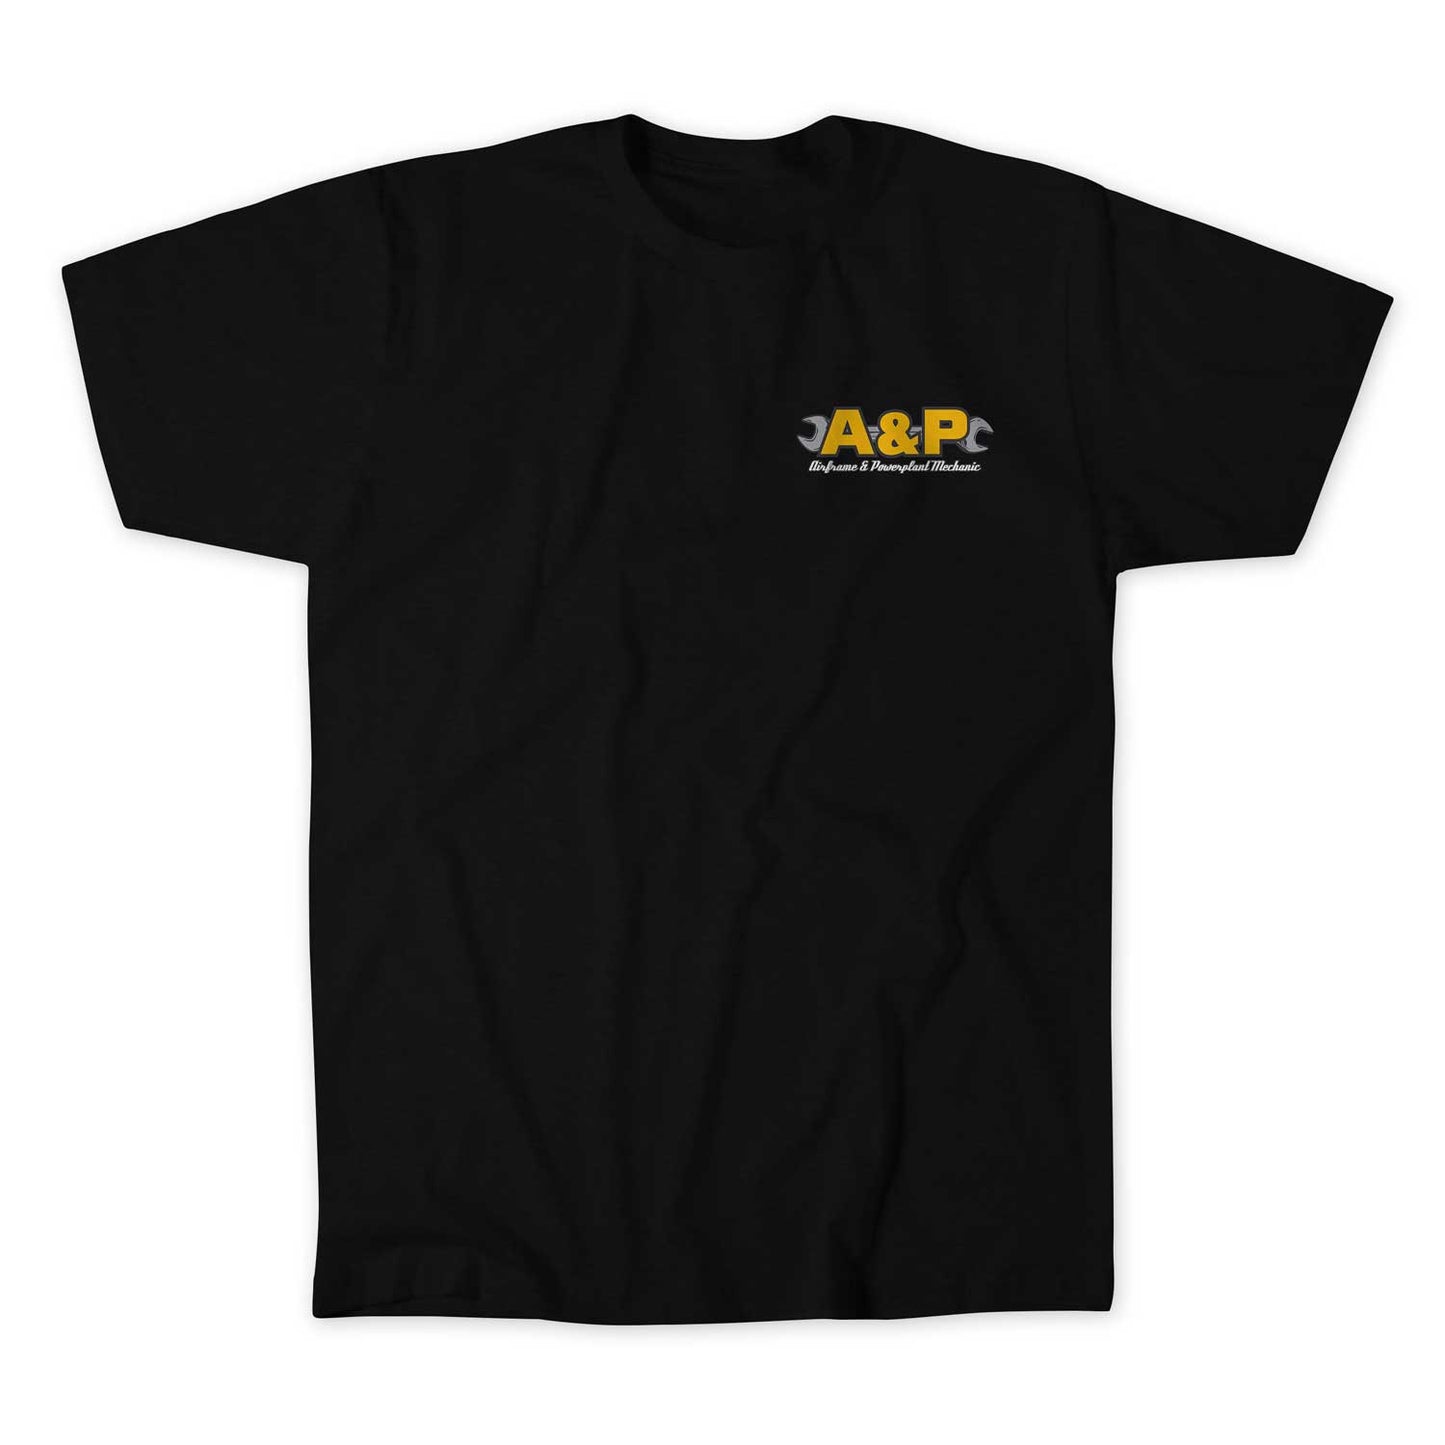 A&P Retro T-shirt